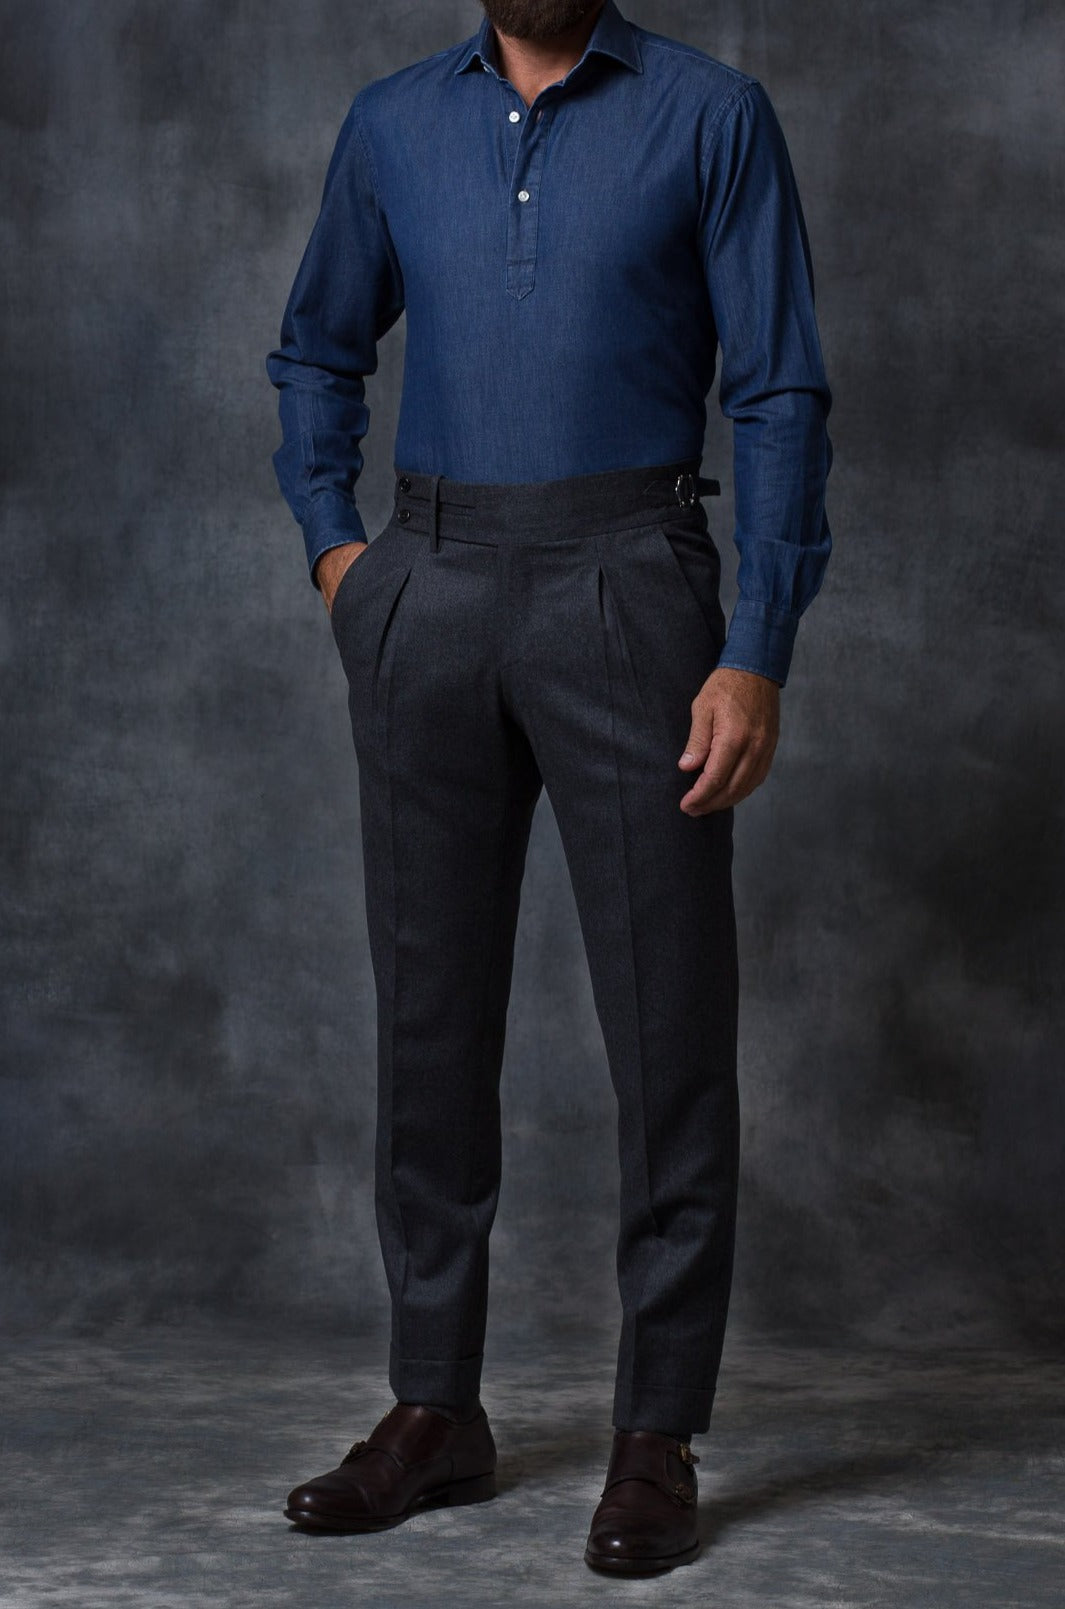 Pantalon slim en lin gris foncé & noir, pour homme Made in Turkey